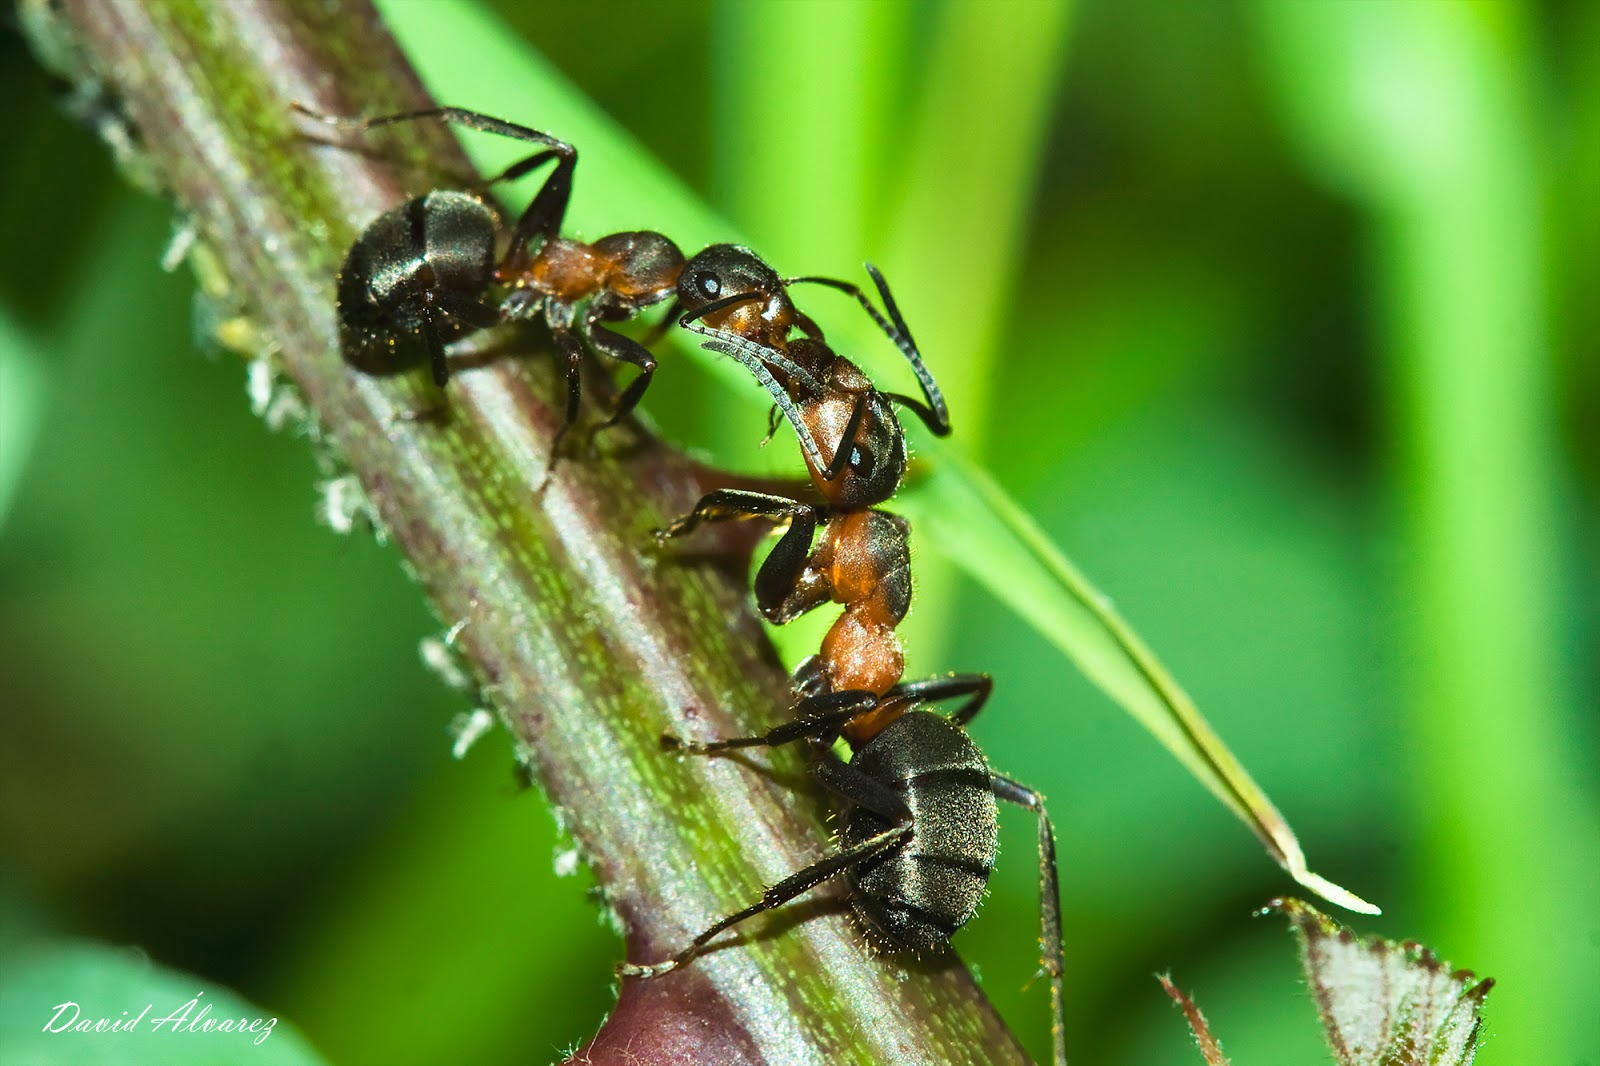 Las colonias de hormigas comparten un único metabolismo al intercambiar saliva entre todas